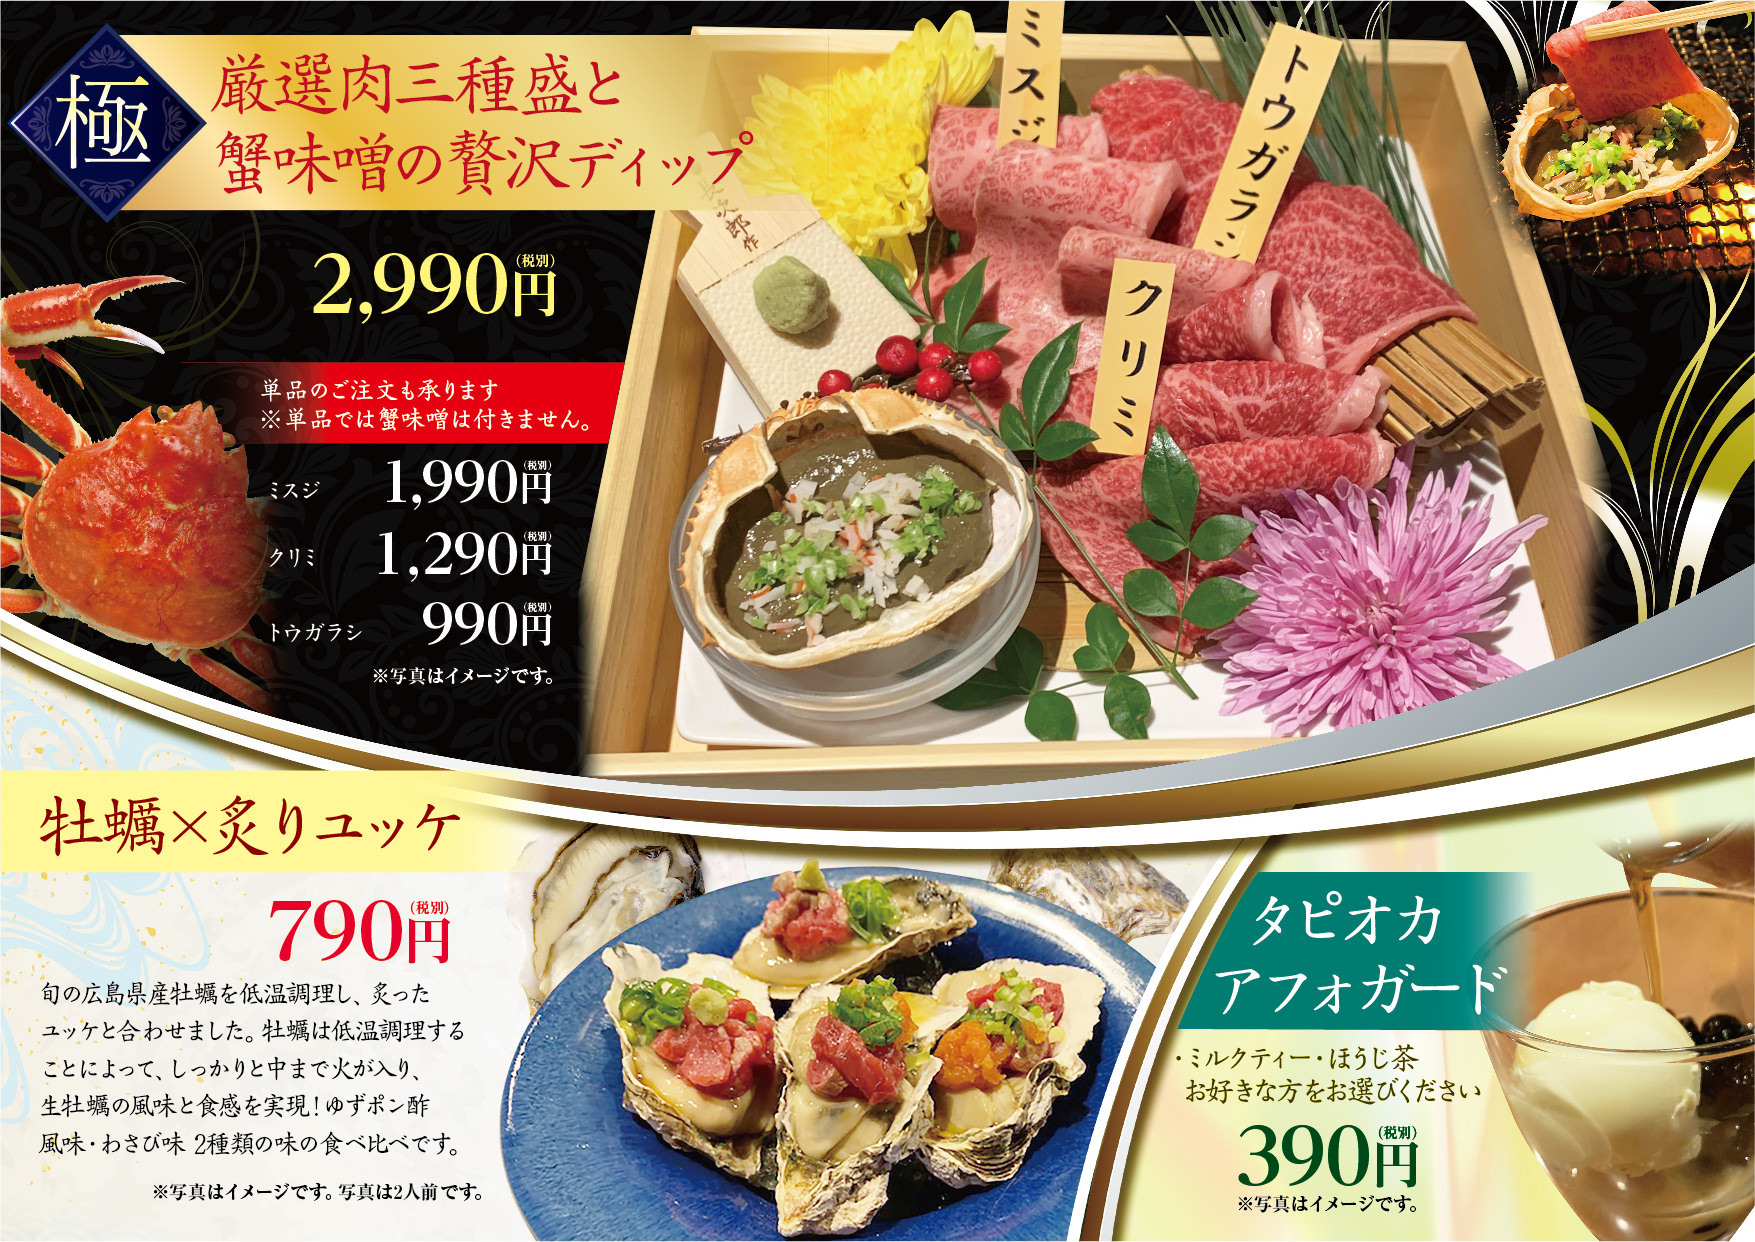 東京初開催、石川県白山市の“食”や“伝統文化”の
魅力発信イベント「いいとこ白山 自然と文化と発酵街道」開催
1/25～26 丸の内「KITTE」東京シティアイにて